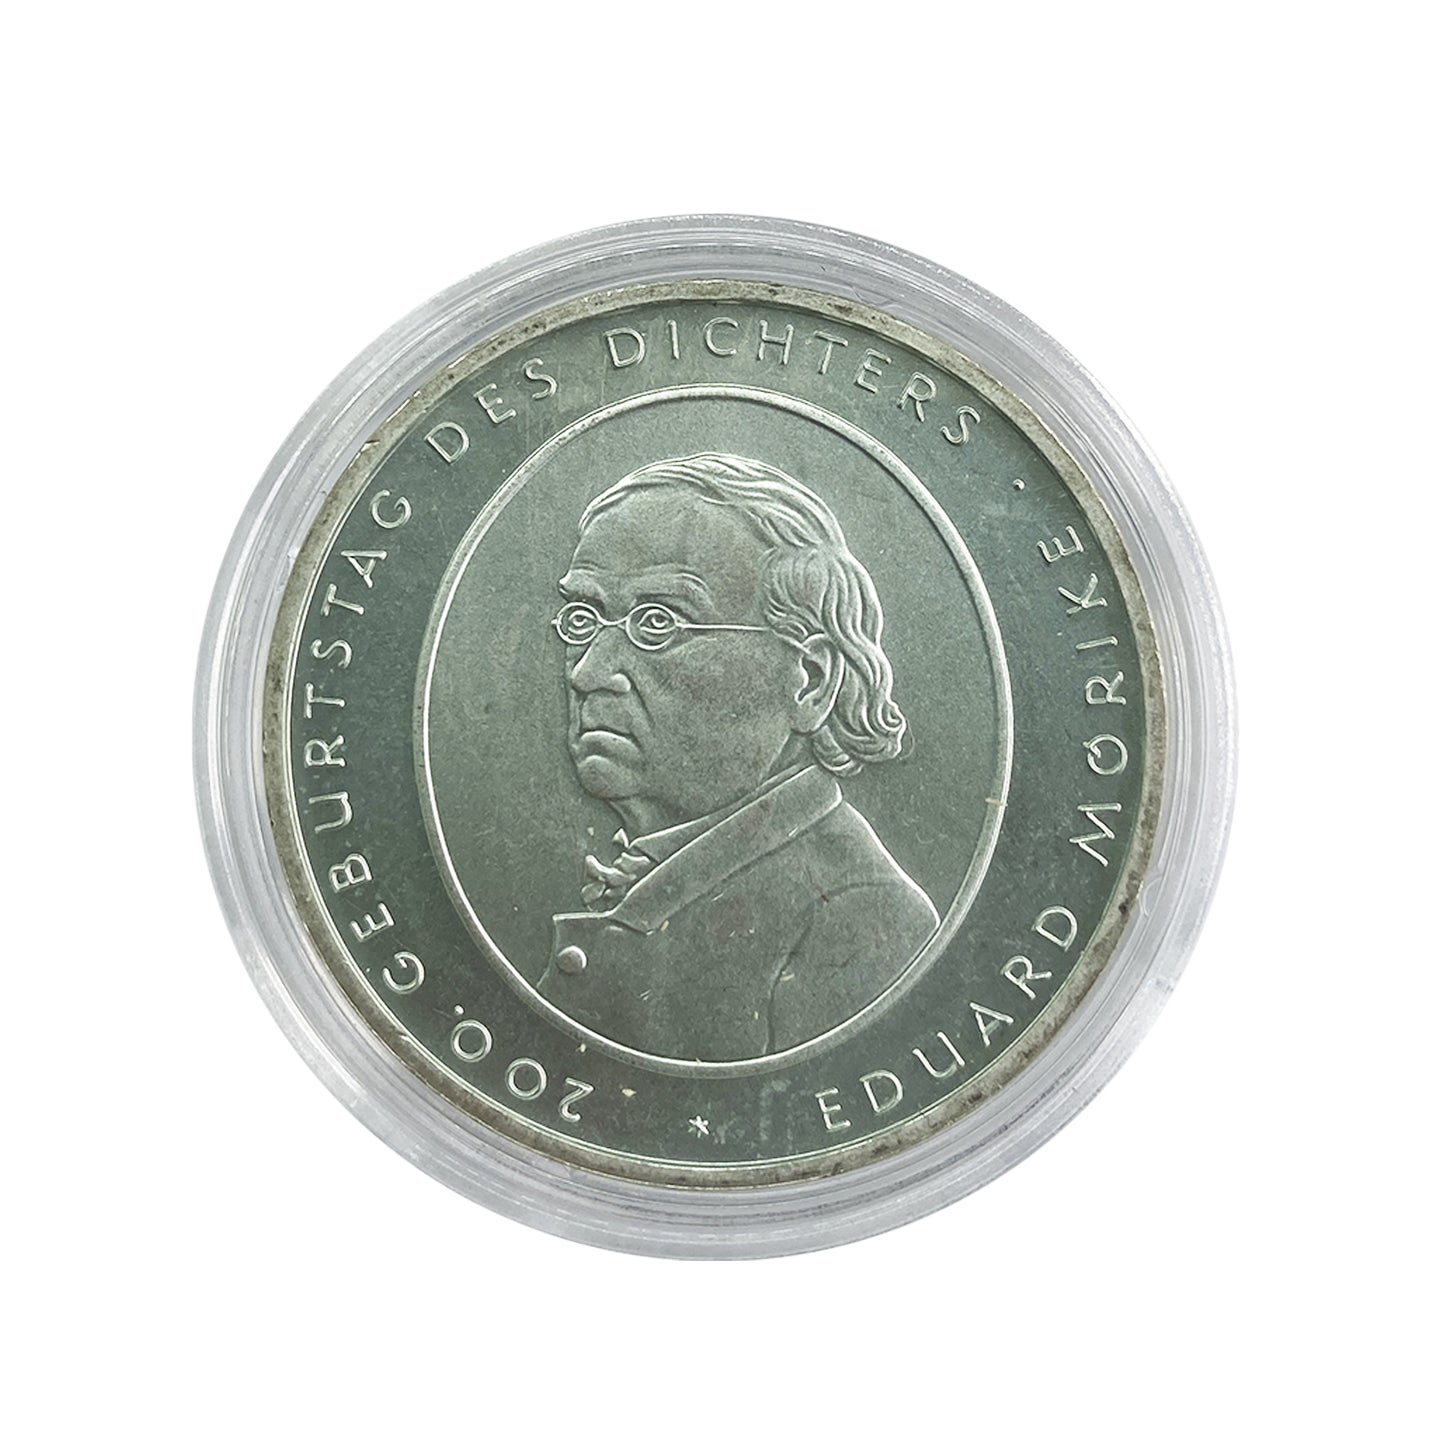 Alemania - Moneda 10 euros plata 2004 - Eduard Mörike